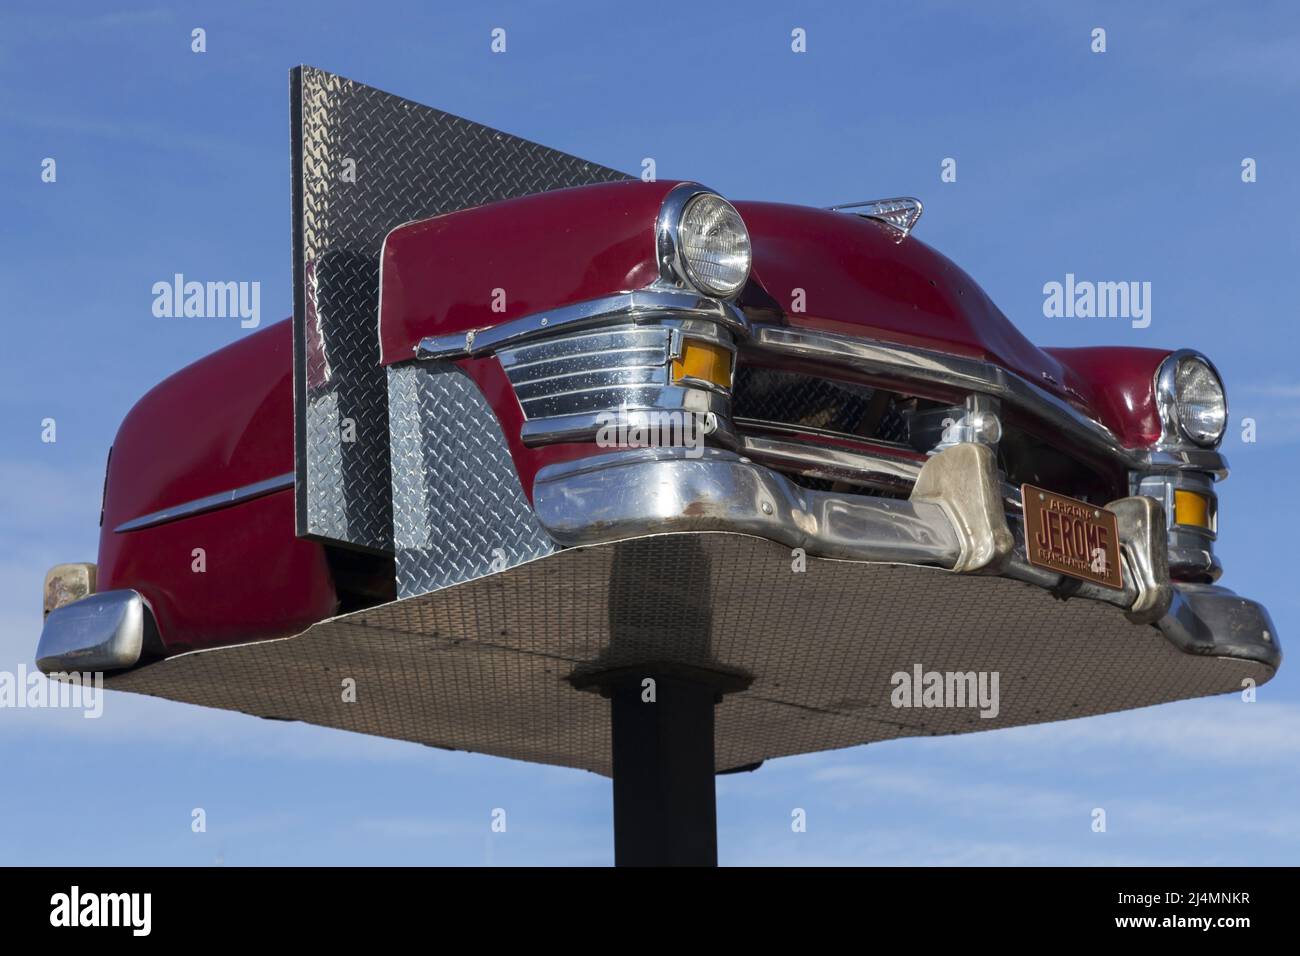 Vue latérale avant de la voiture classique Red Vintage Chevrolet ou du véhicule Chevrolet américain à partir de 1950s sur une plate-forme surélevée dans la ville de Jerome, Arizona Banque D'Images